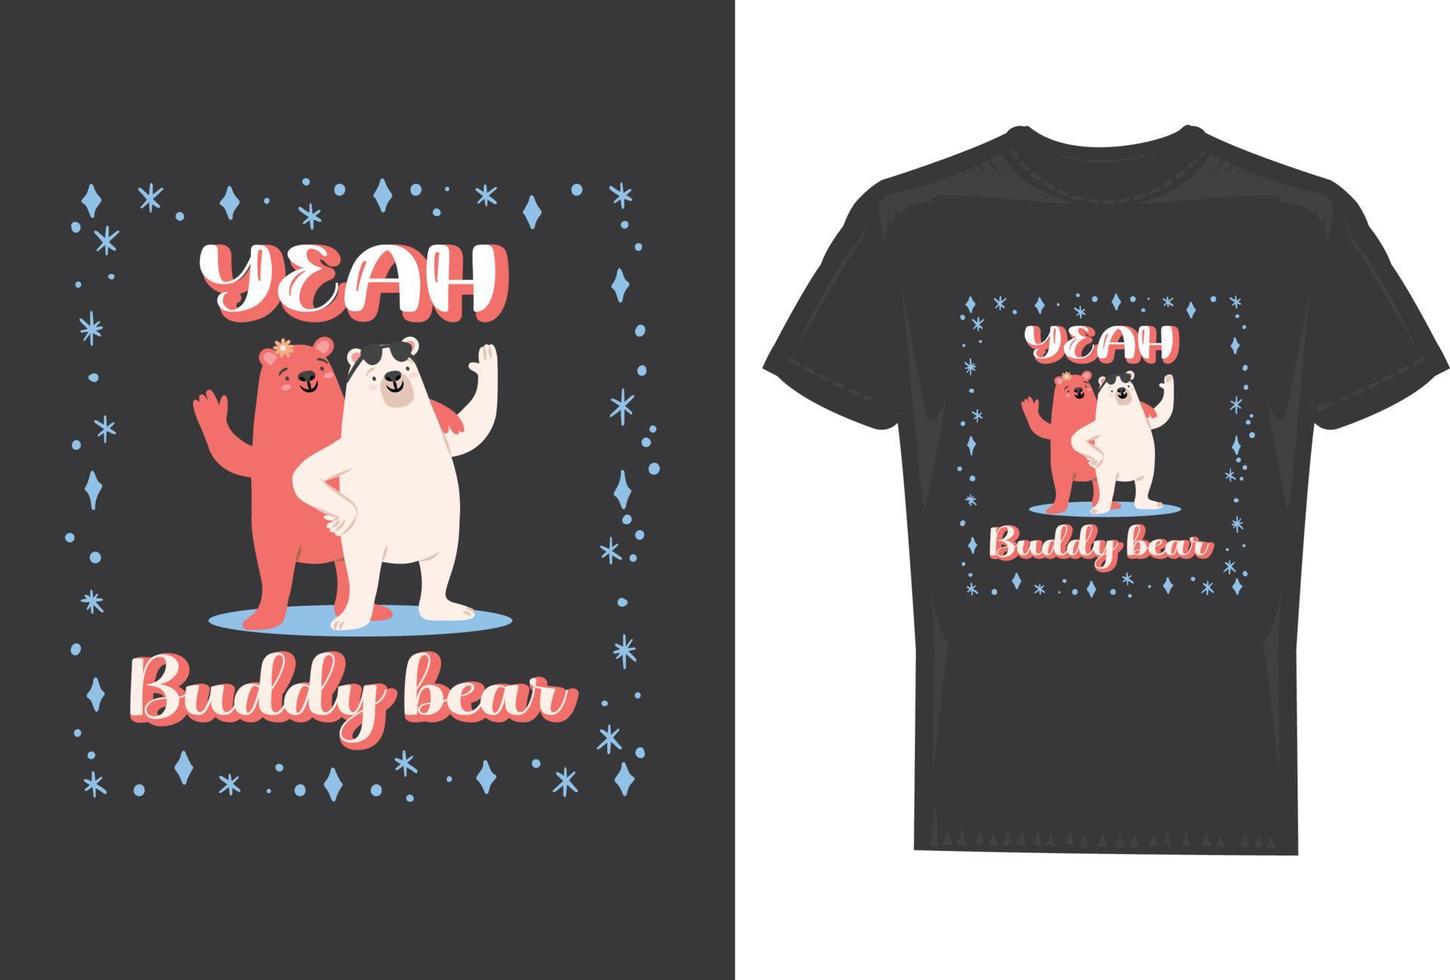 yeah buddy bear t-shirt design for men and women vector